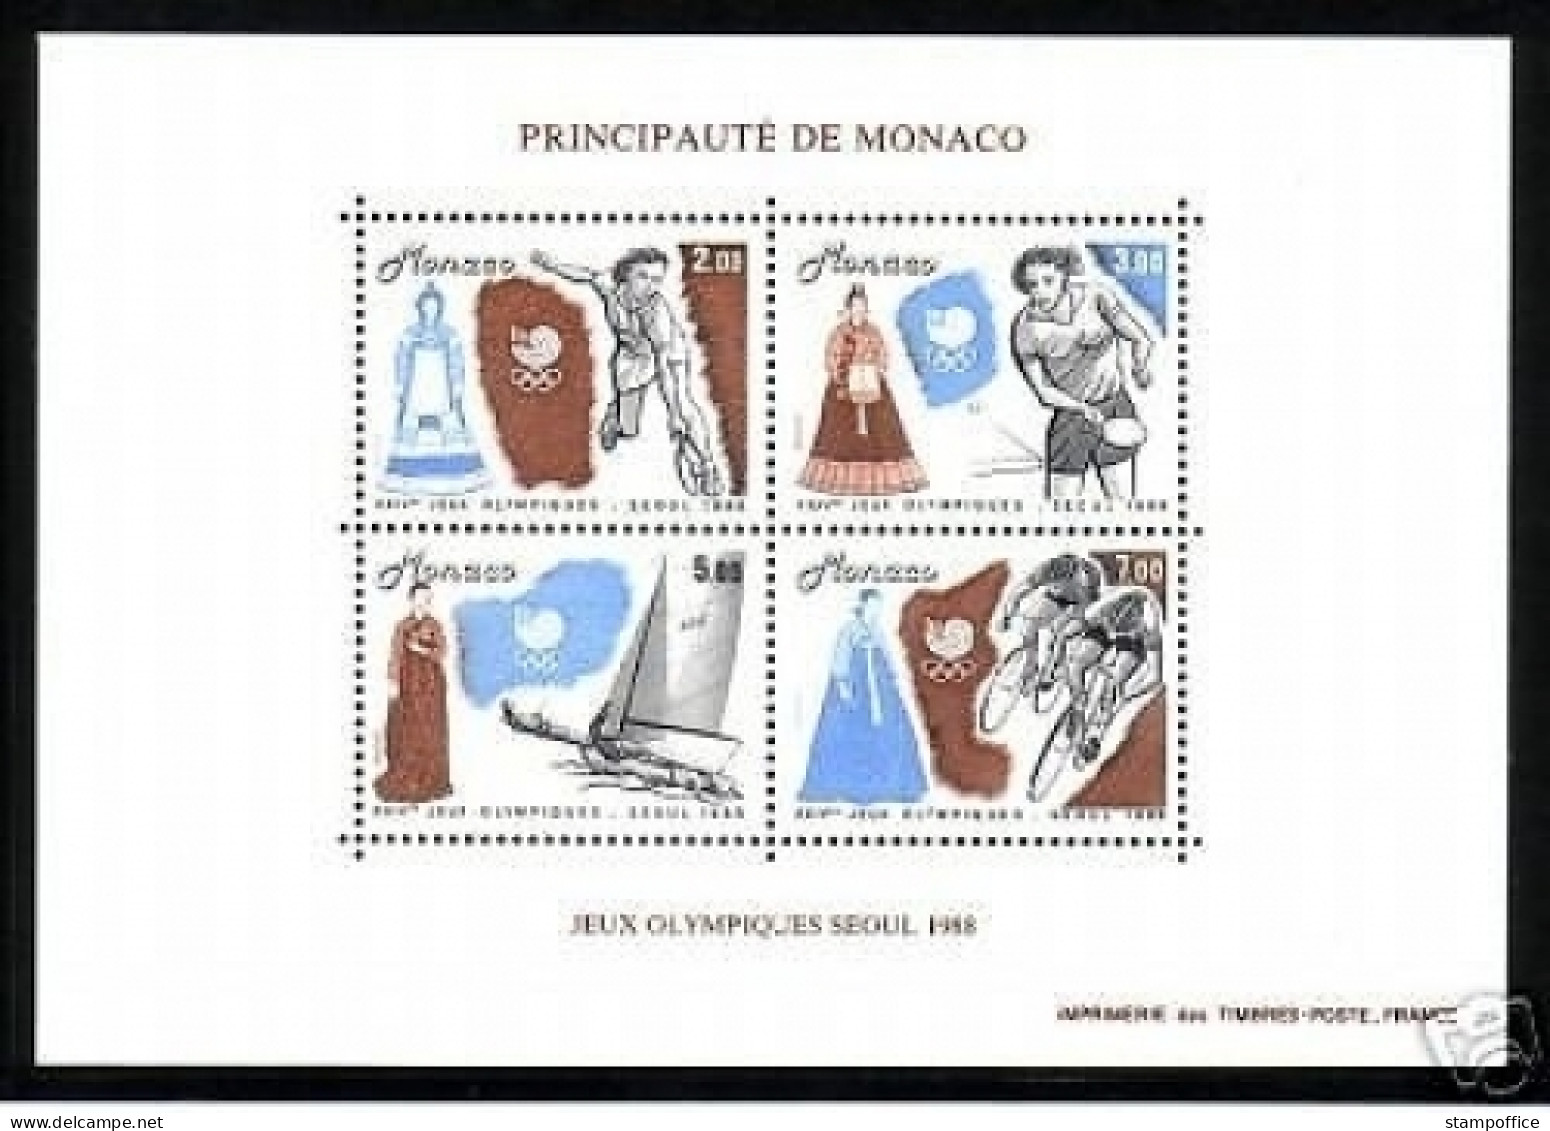 MONACO BLOCK 40 POSTFRISCH(MINT) OLYMPISCHE SOMMERSPIELE SEOUL 1988 TENNIS SEGELN TISCHTENNIS RADFAHREN - Tenis De Mesa